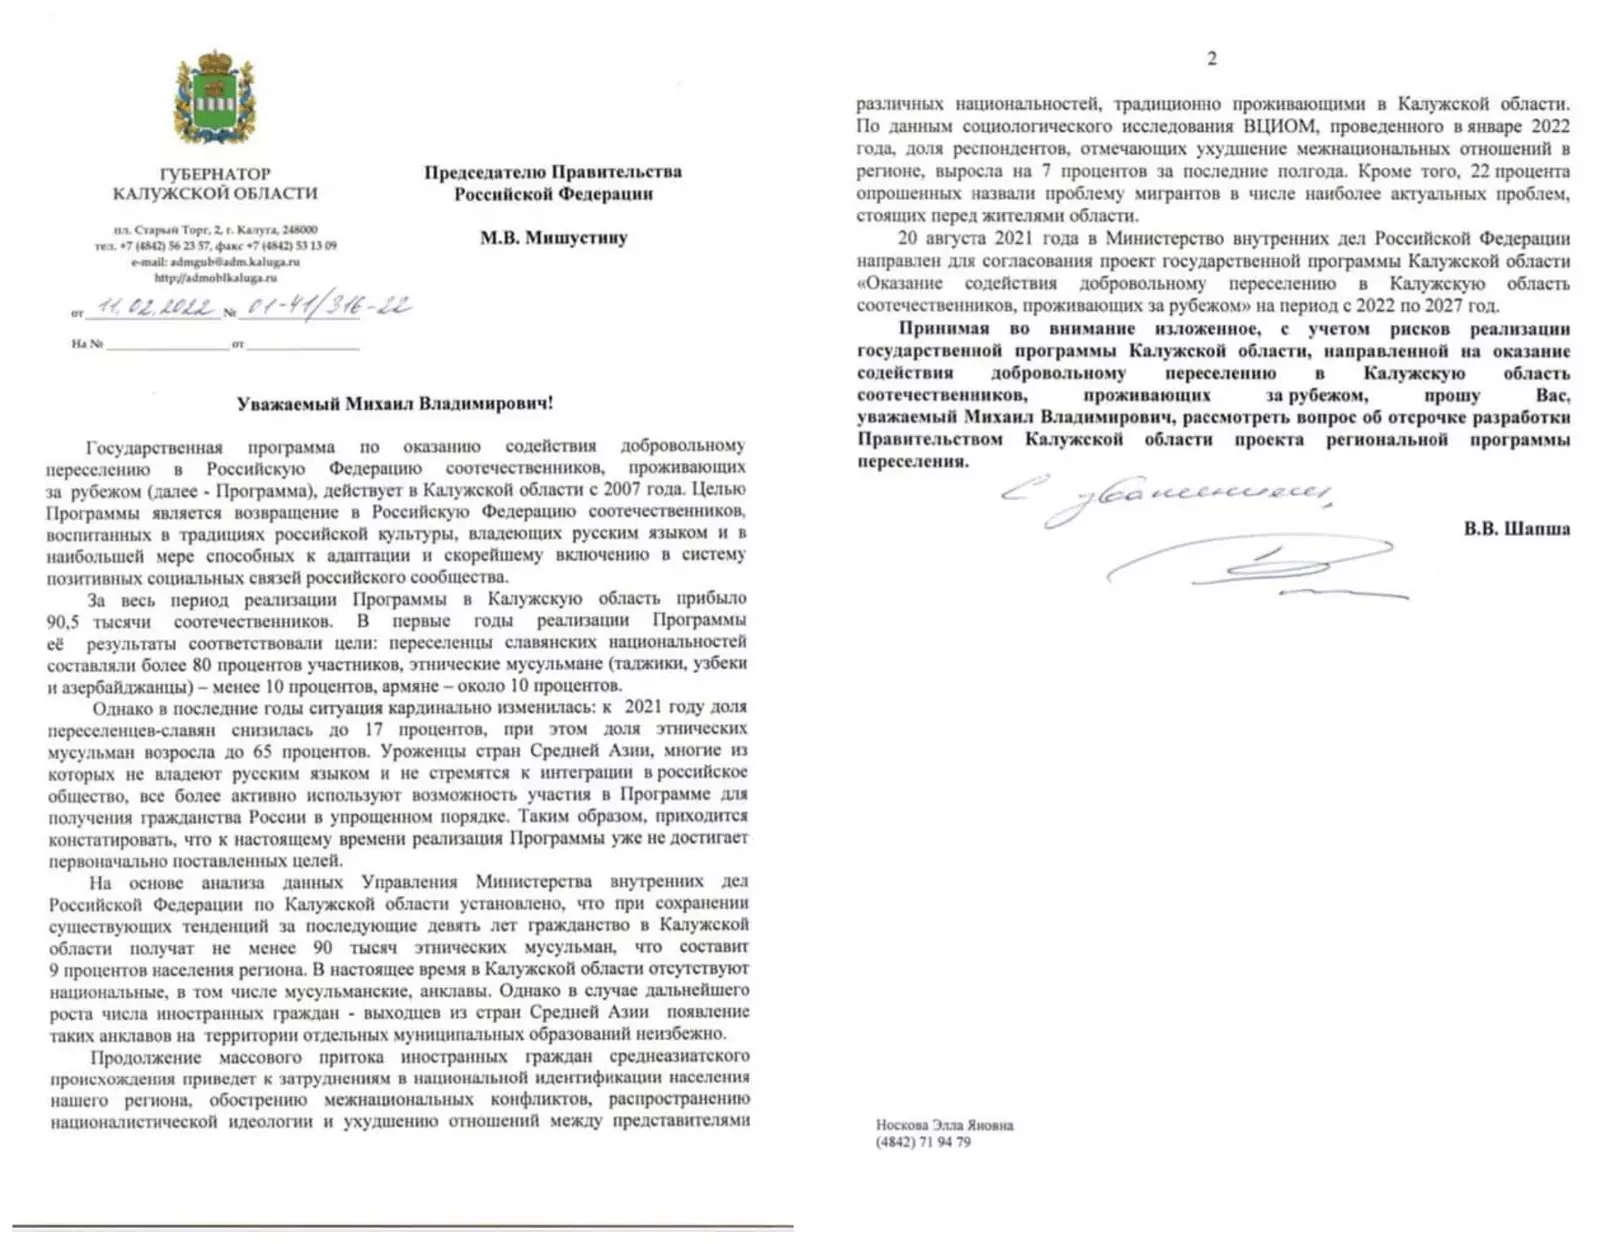 Обращение губернатора Шапши к премьер-министру Михаилу Мишустину о выходе из Программы переселения соотечественников.